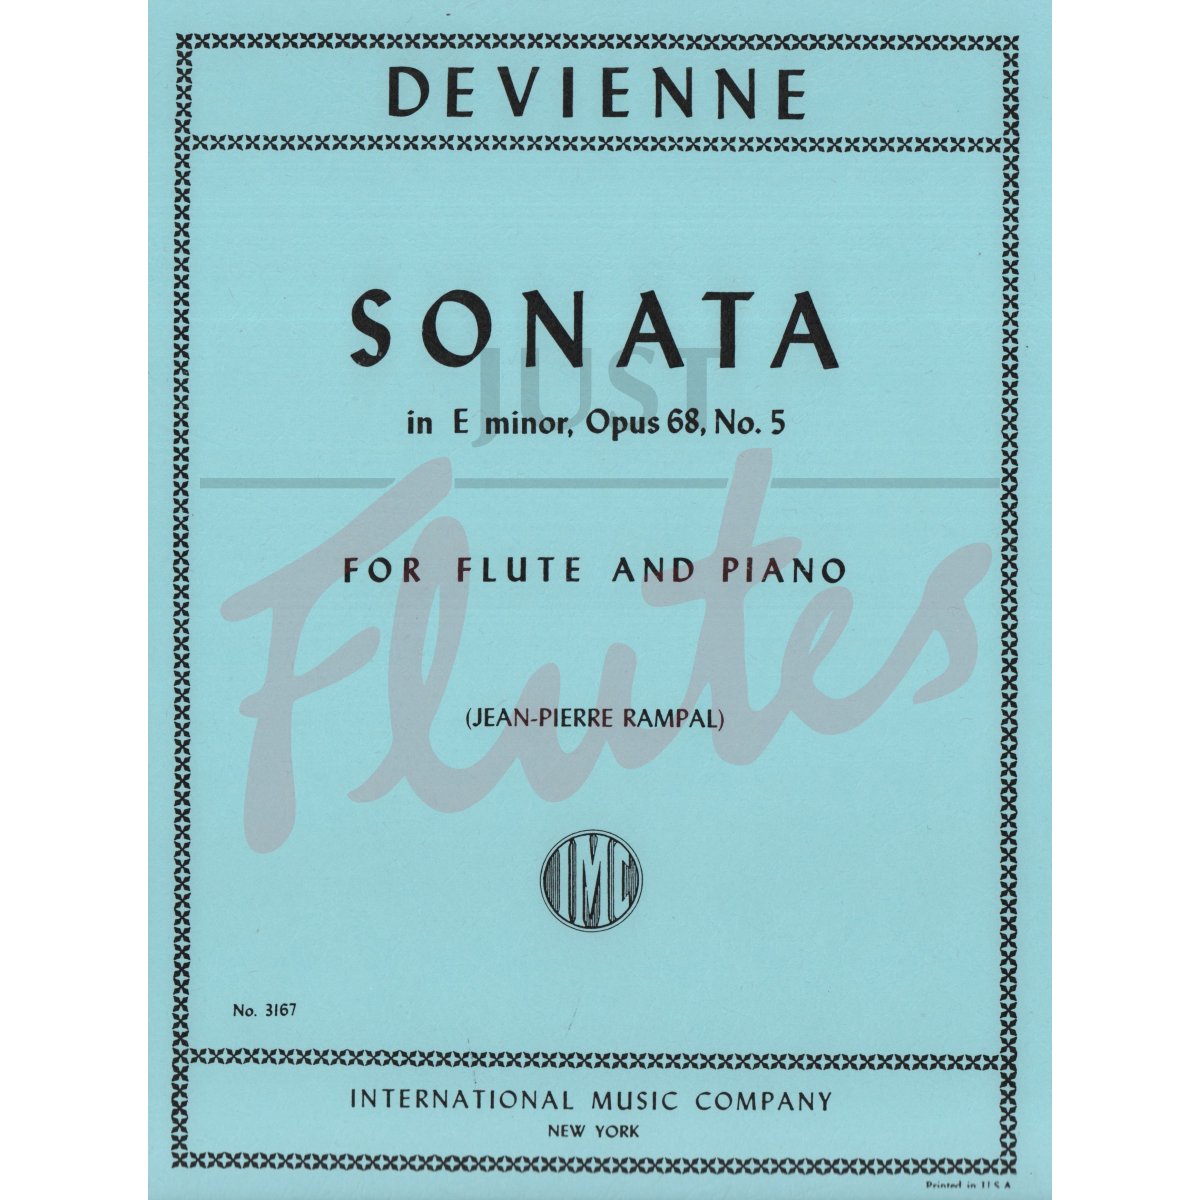 Sonata in E minor for Flute and Piano